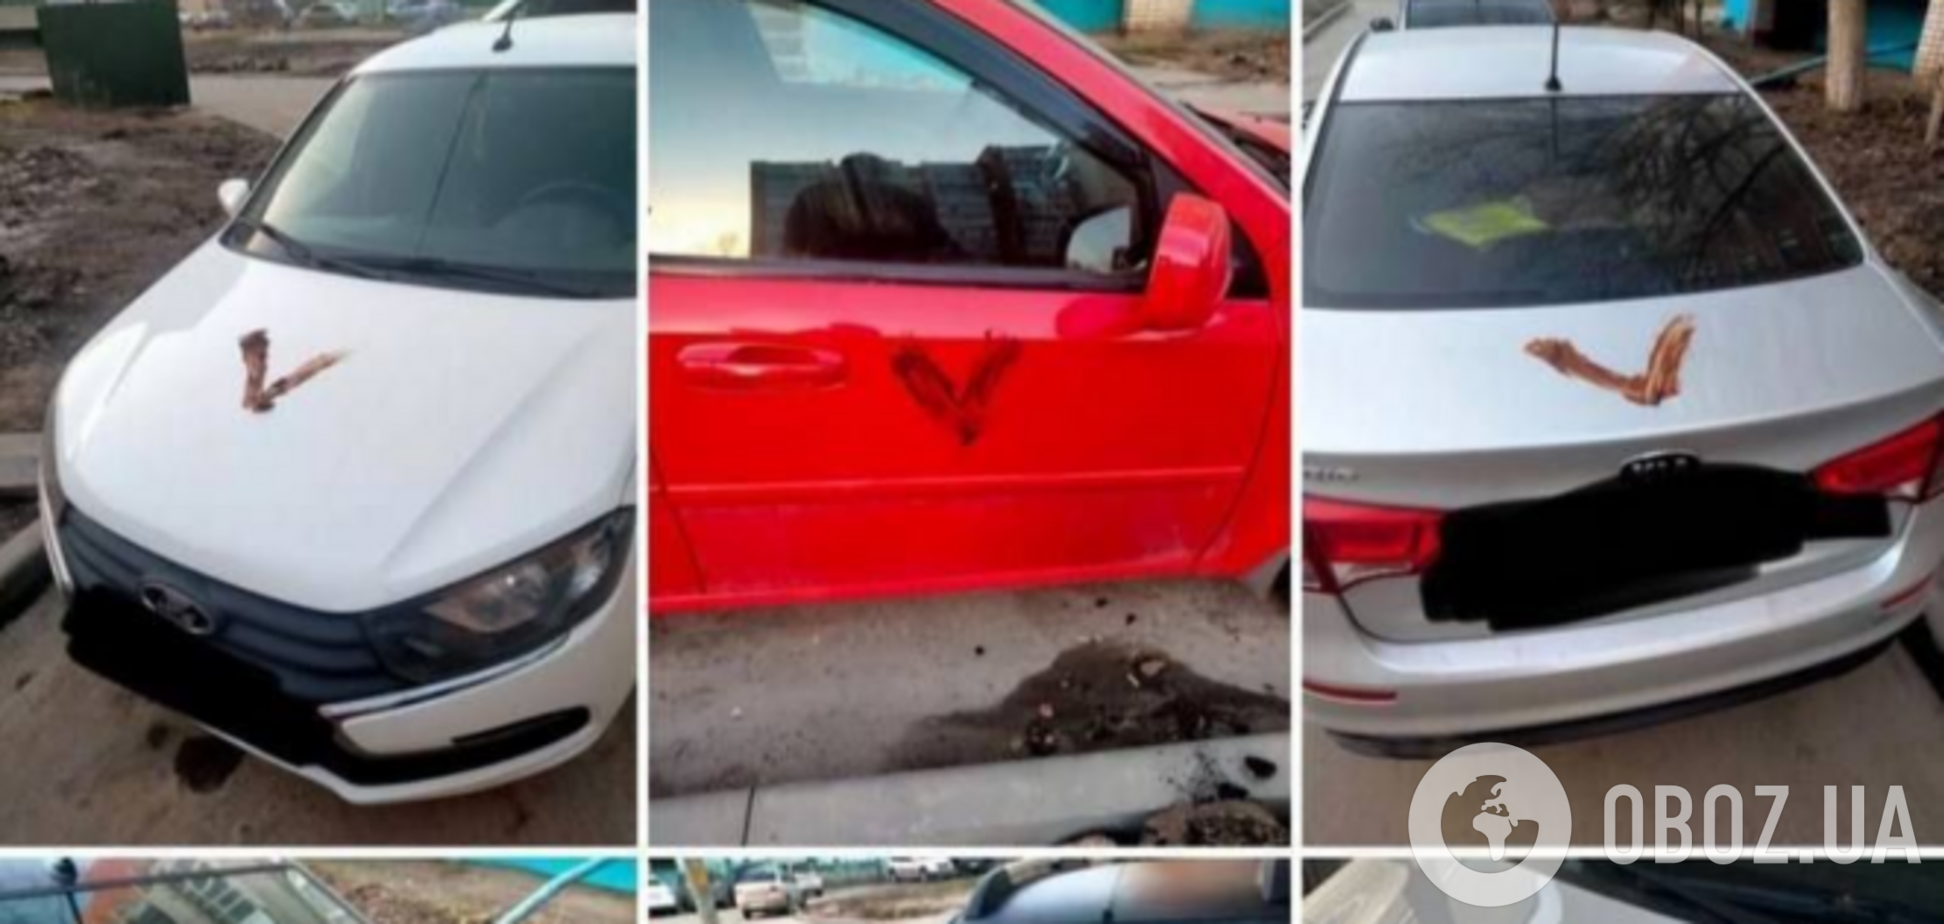 Дискредитация армии или патриотическая акция? В Чебоксарах автомобили россиянин 'украсили' символами V из го*на. Фото